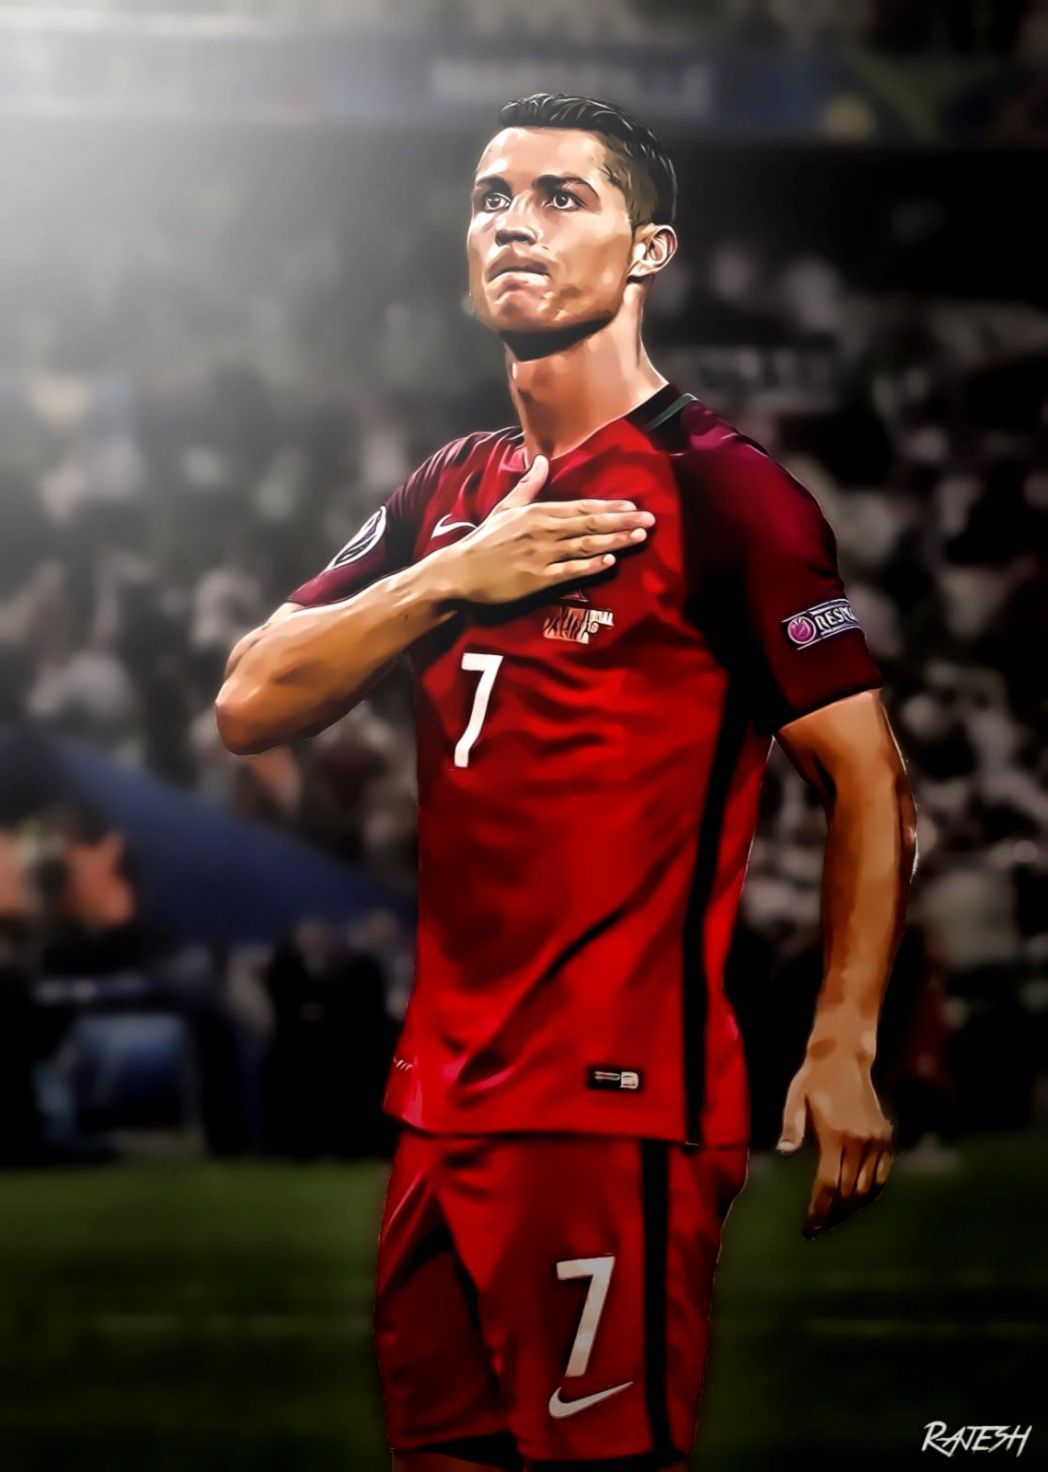 Cristiano Ronaldo Portugal Wallpaper Free Cristiano Ronaldo Portugal Background